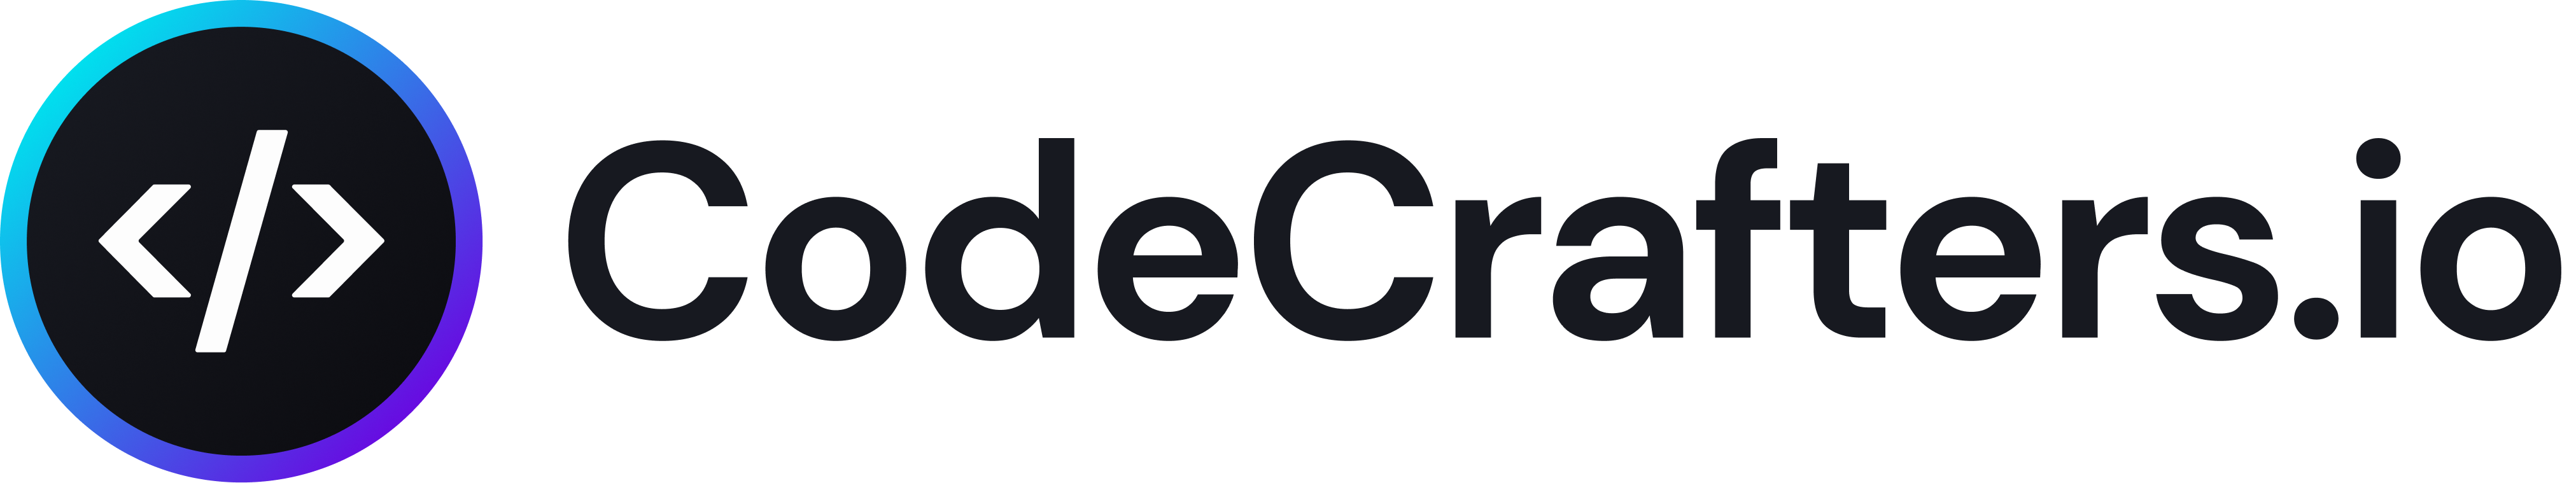 CodeCrafters logo